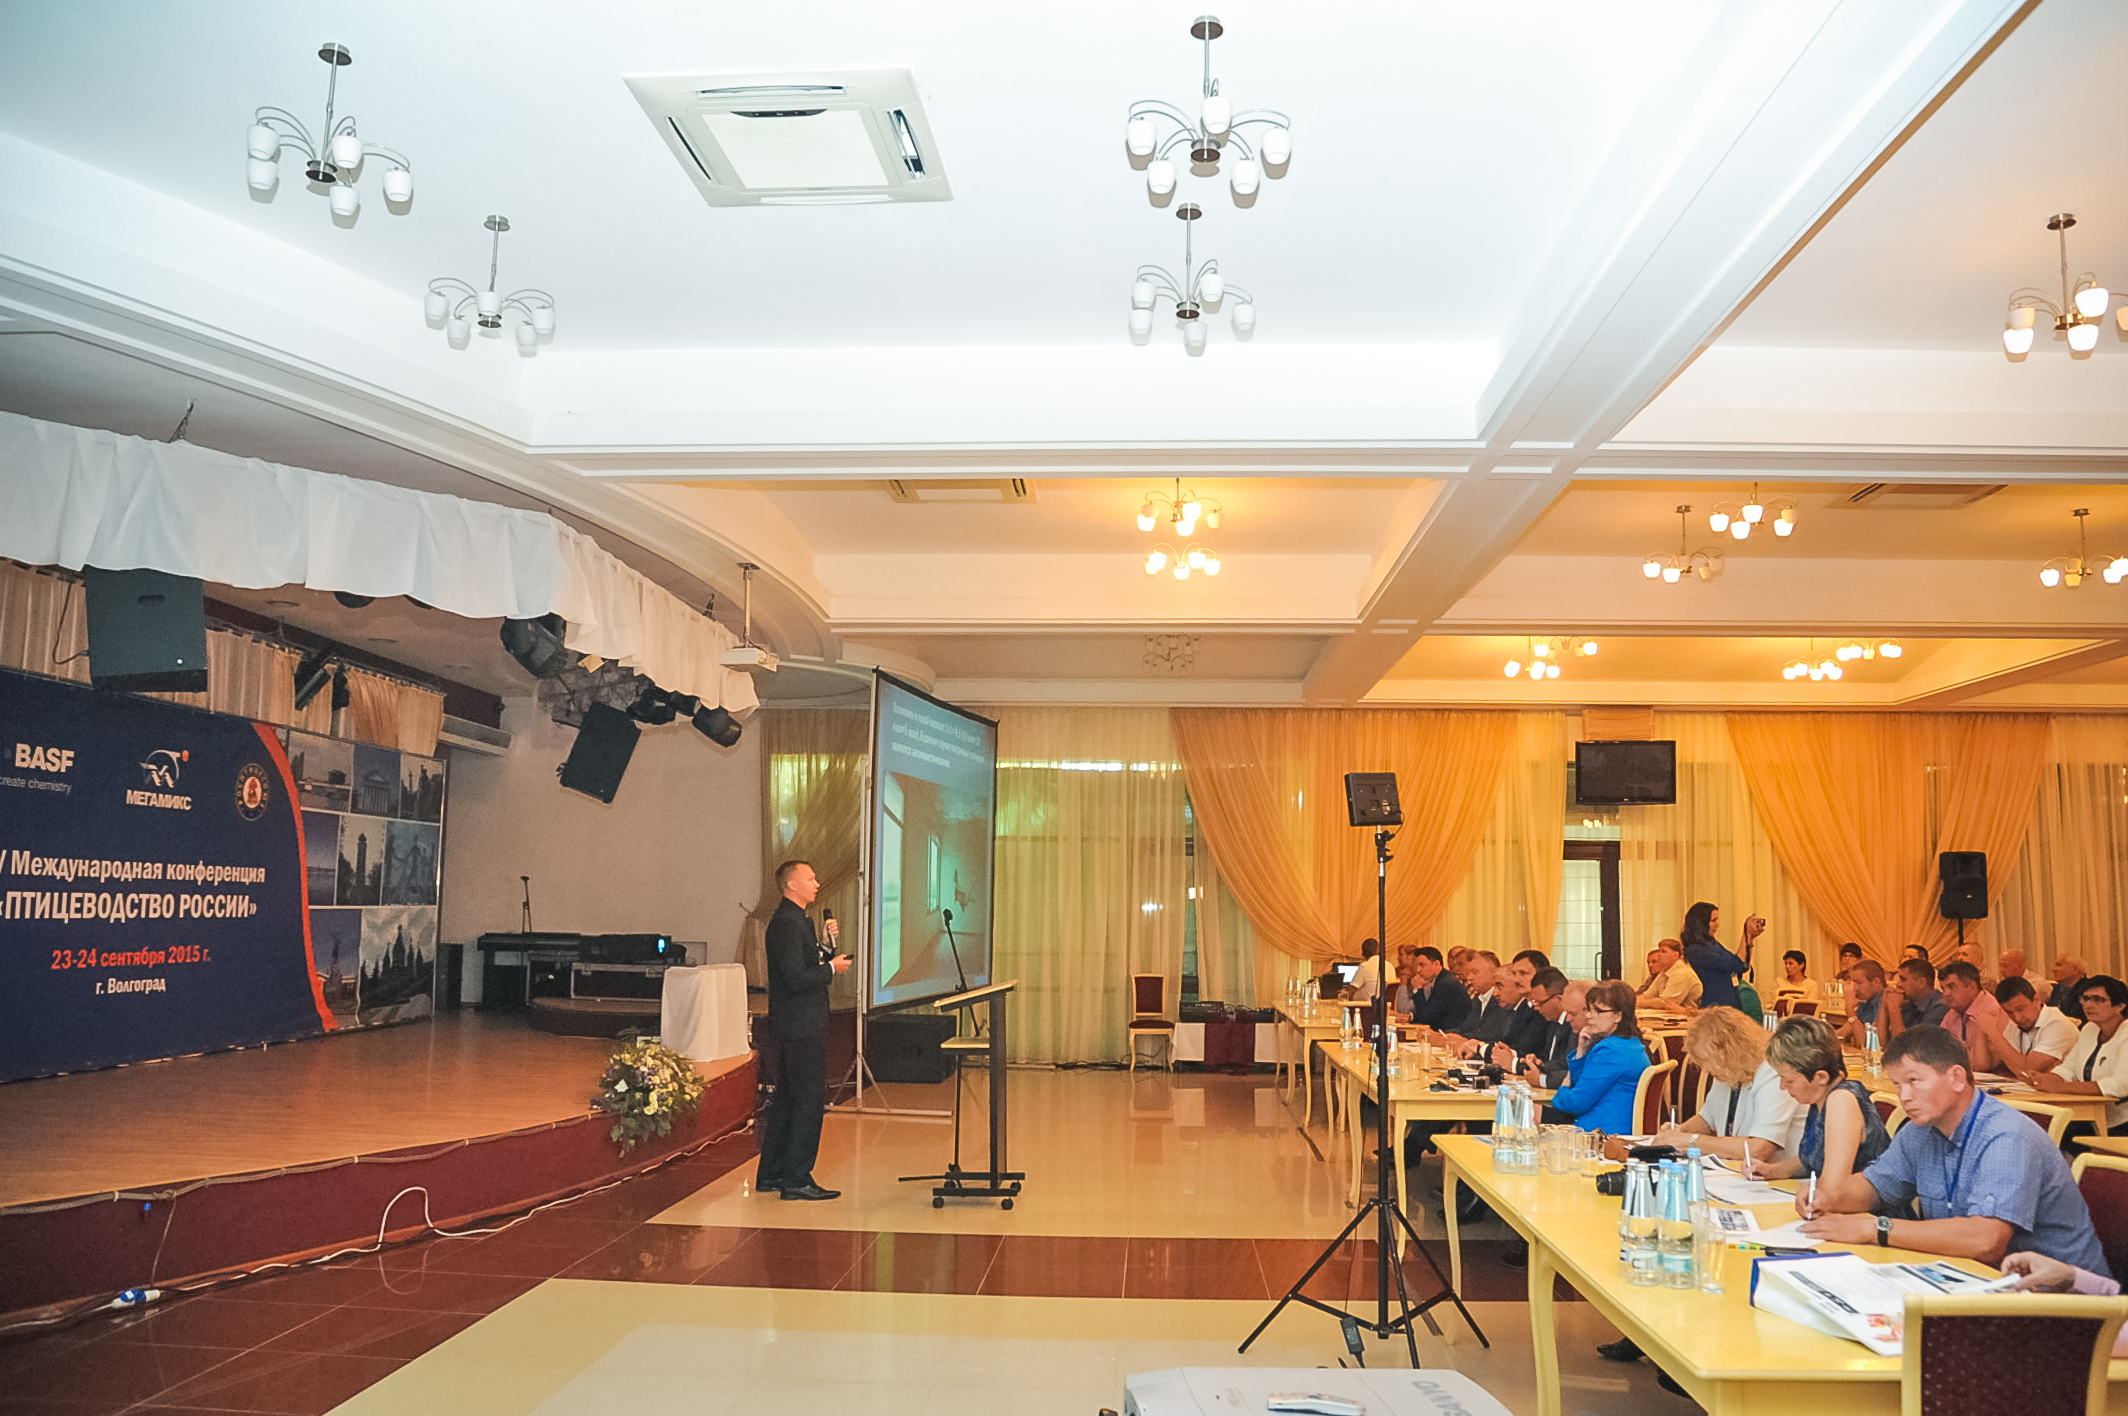 В Волгоградской области  открылась международная конференция «Птицеводство России»